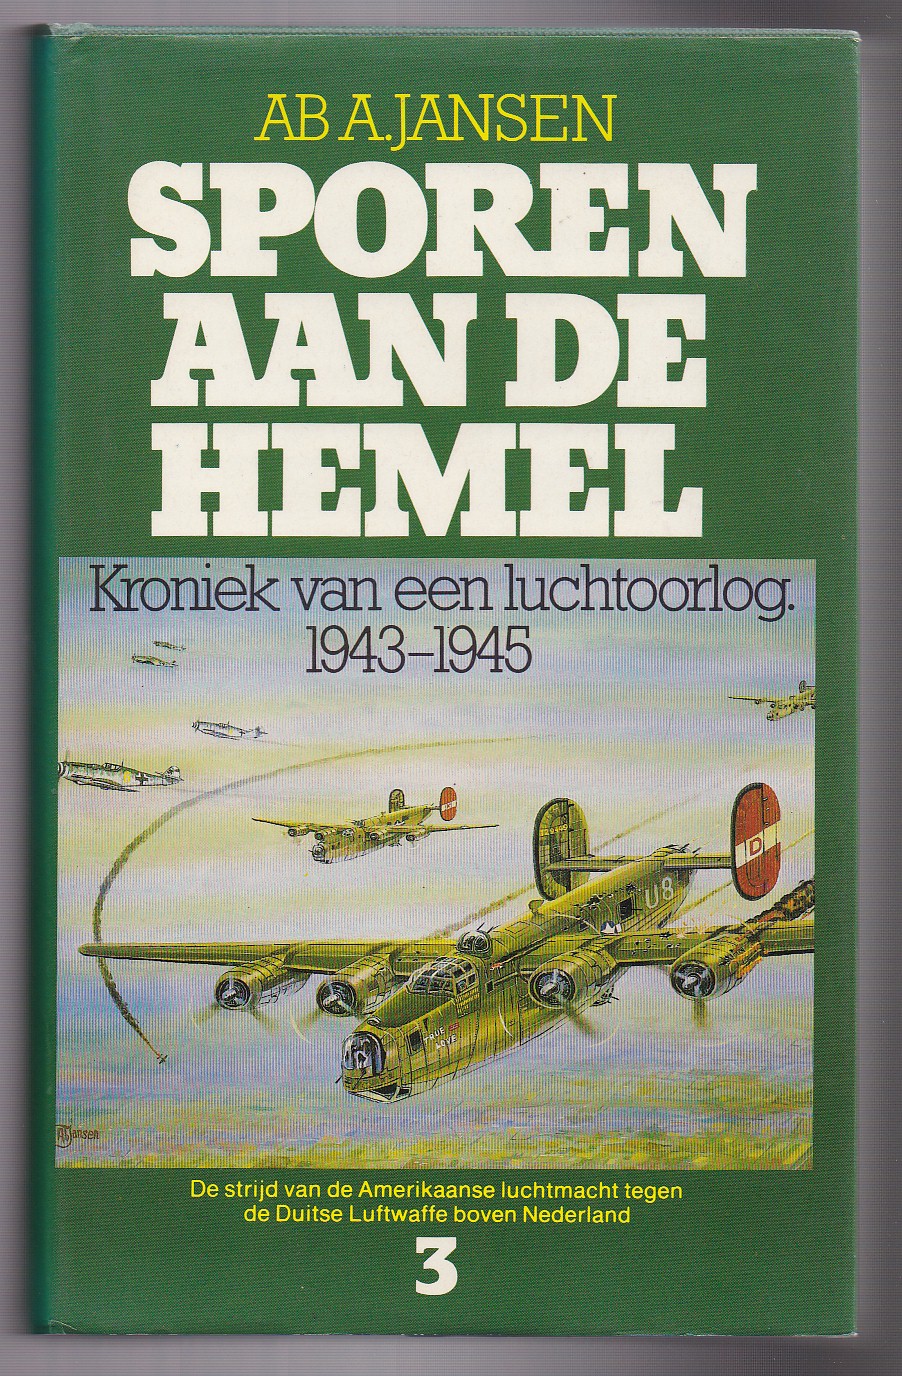 Jansen, Ab A. - Sporen aan de hemel. Kroniek van een luchtoorlog Deel-3: 1944-1945. De strijd van de Amerikaanse luchtmacht tegen de Duitse Luftwaffe boven Nederland